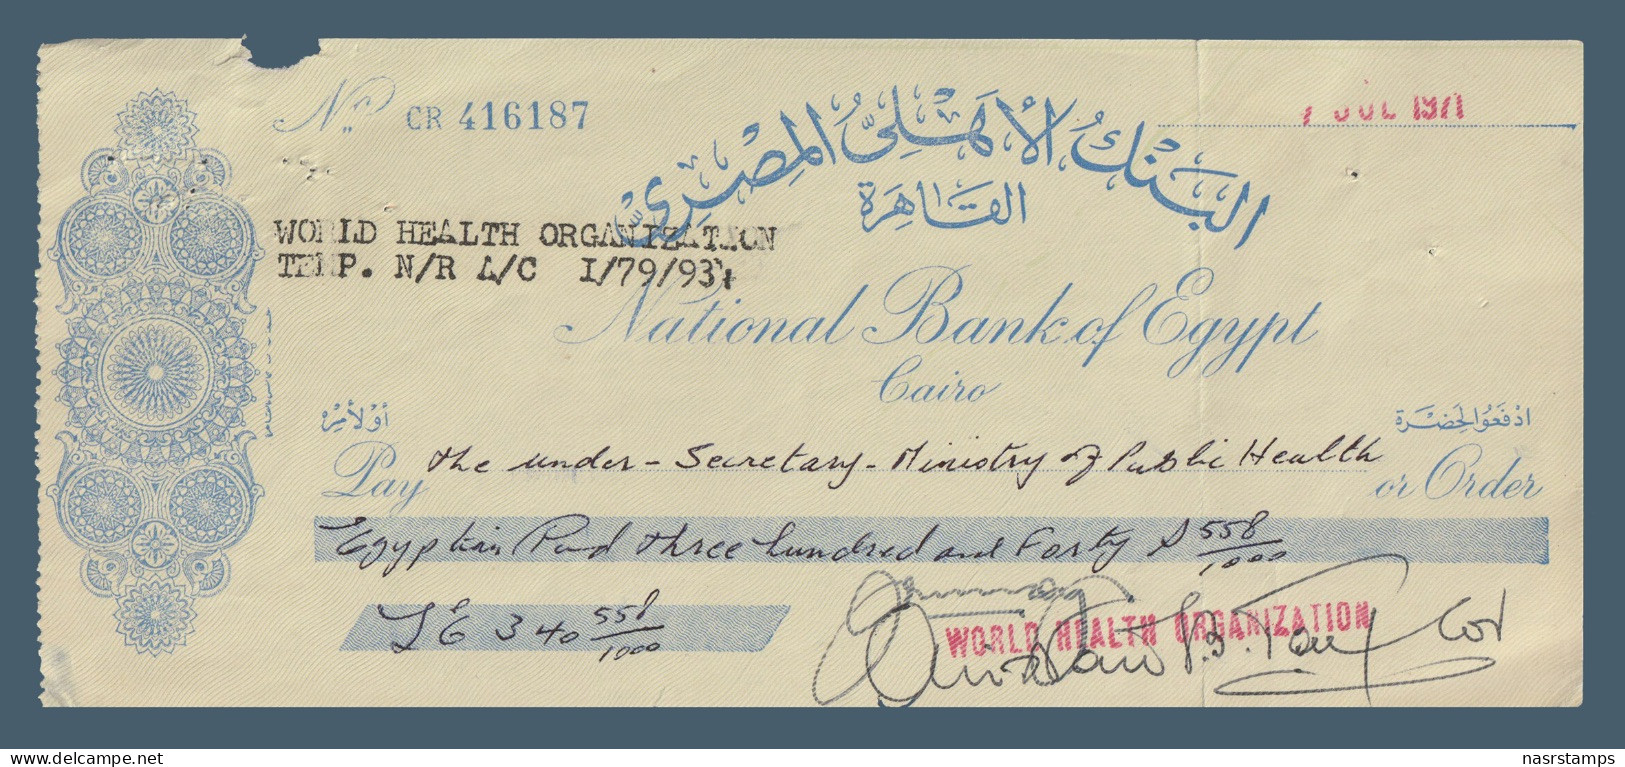 Egypt - 1971 - Vintage Check - ( National Bank Of Egypt ) - Schecks  Und Reiseschecks